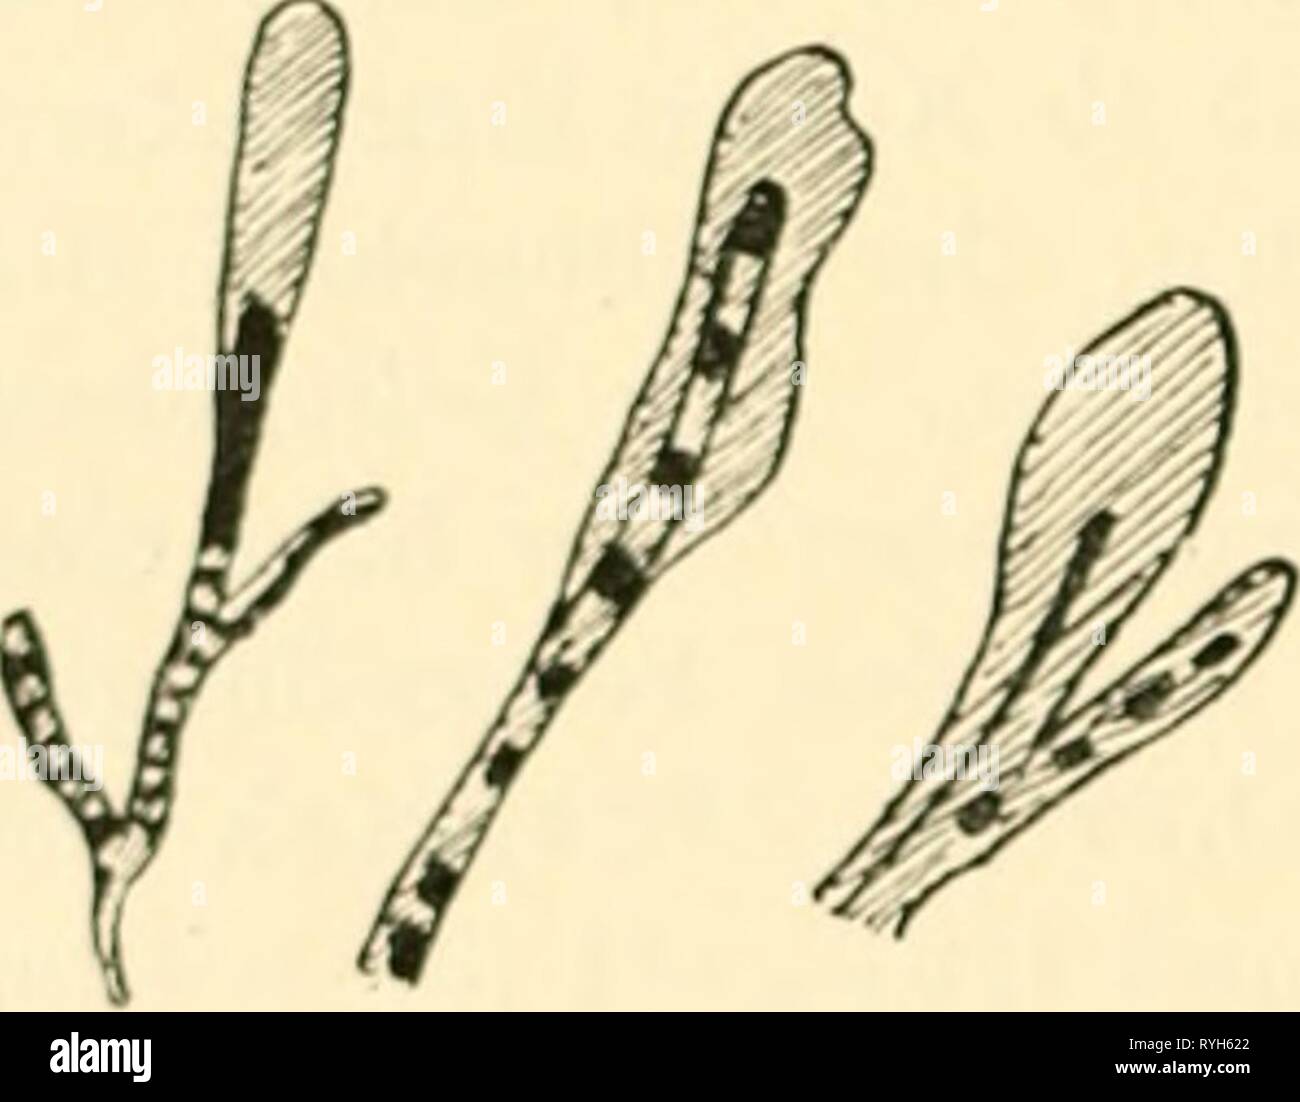 Einfhrung in die Agrikulturmykolgie  einfhrungindieag00koss Year: 1912  — Mykologie des Düng Dupont (2) u. a. Anaerobe Bakterien wurden insbesondere von Sewerin (3) im Pferdemist gefunden. Auf das Vorkommen von Vibrio- Arten und Spirillen in der Dünger-Jauche weist Kutscher (1) hin. Auch Sarcina-Arten wurden in Mist und Jauche angetroffen, so von Sames il), F. Schönfeld (1) u.a. Bedeutung kommt auch den im Dünger befindlichen Strahlenpilzen (Aktinomyceten) zu. Solche wurden daraus z. B. von Sewerin (4| und von Tsiklinsky ili isoliert. J. Choutkevitsch (1) stellte das Auftreten von Laktobazille Stock Photo